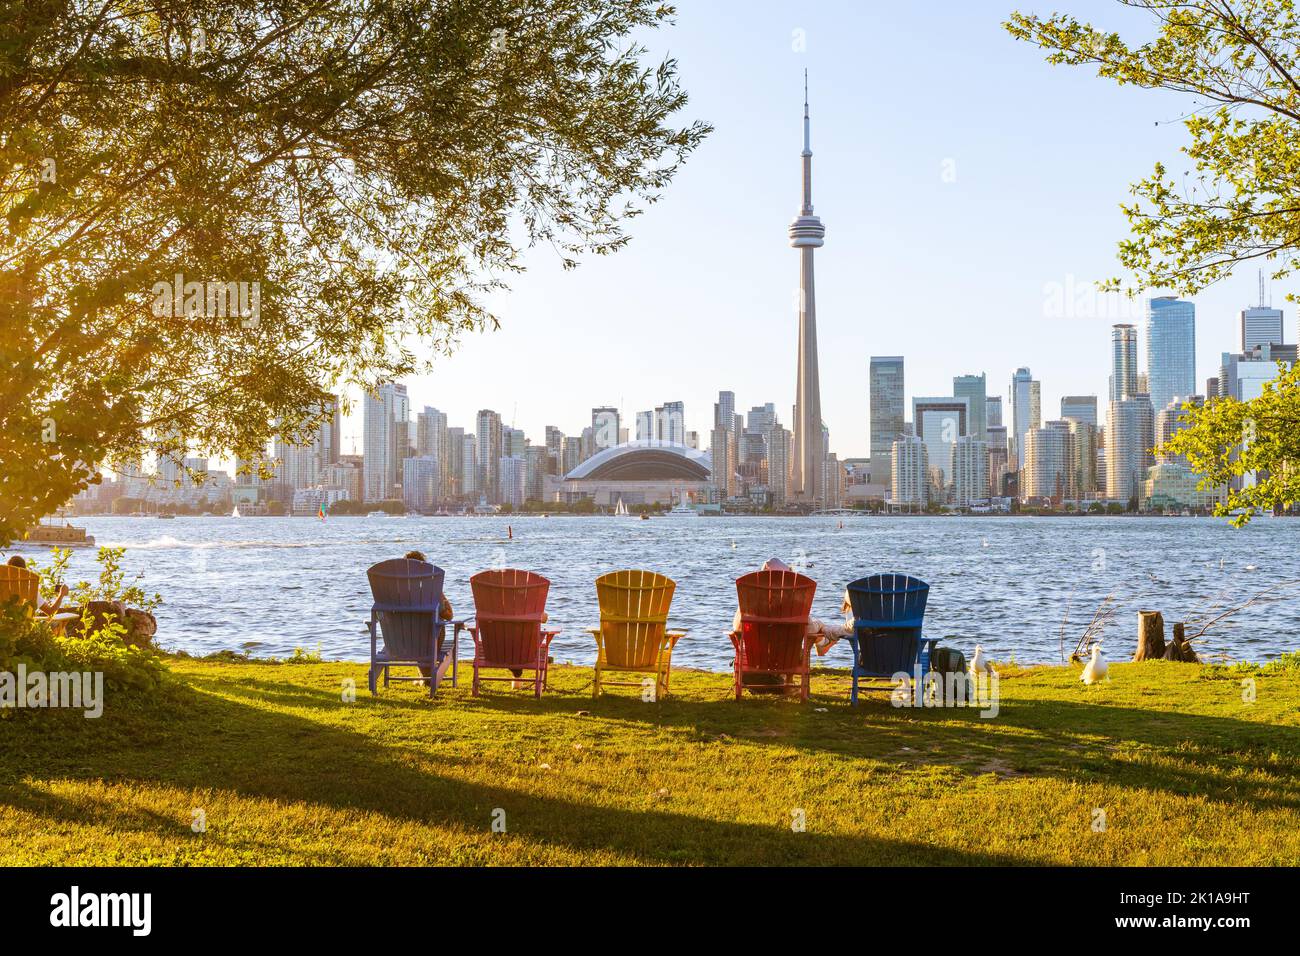 Coloridas sillas Adirondack en Toronto Island Park al atardecer. El horizonte del centro de la ciudad de Toronto al fondo. Ontario, Canadá. Foto de stock